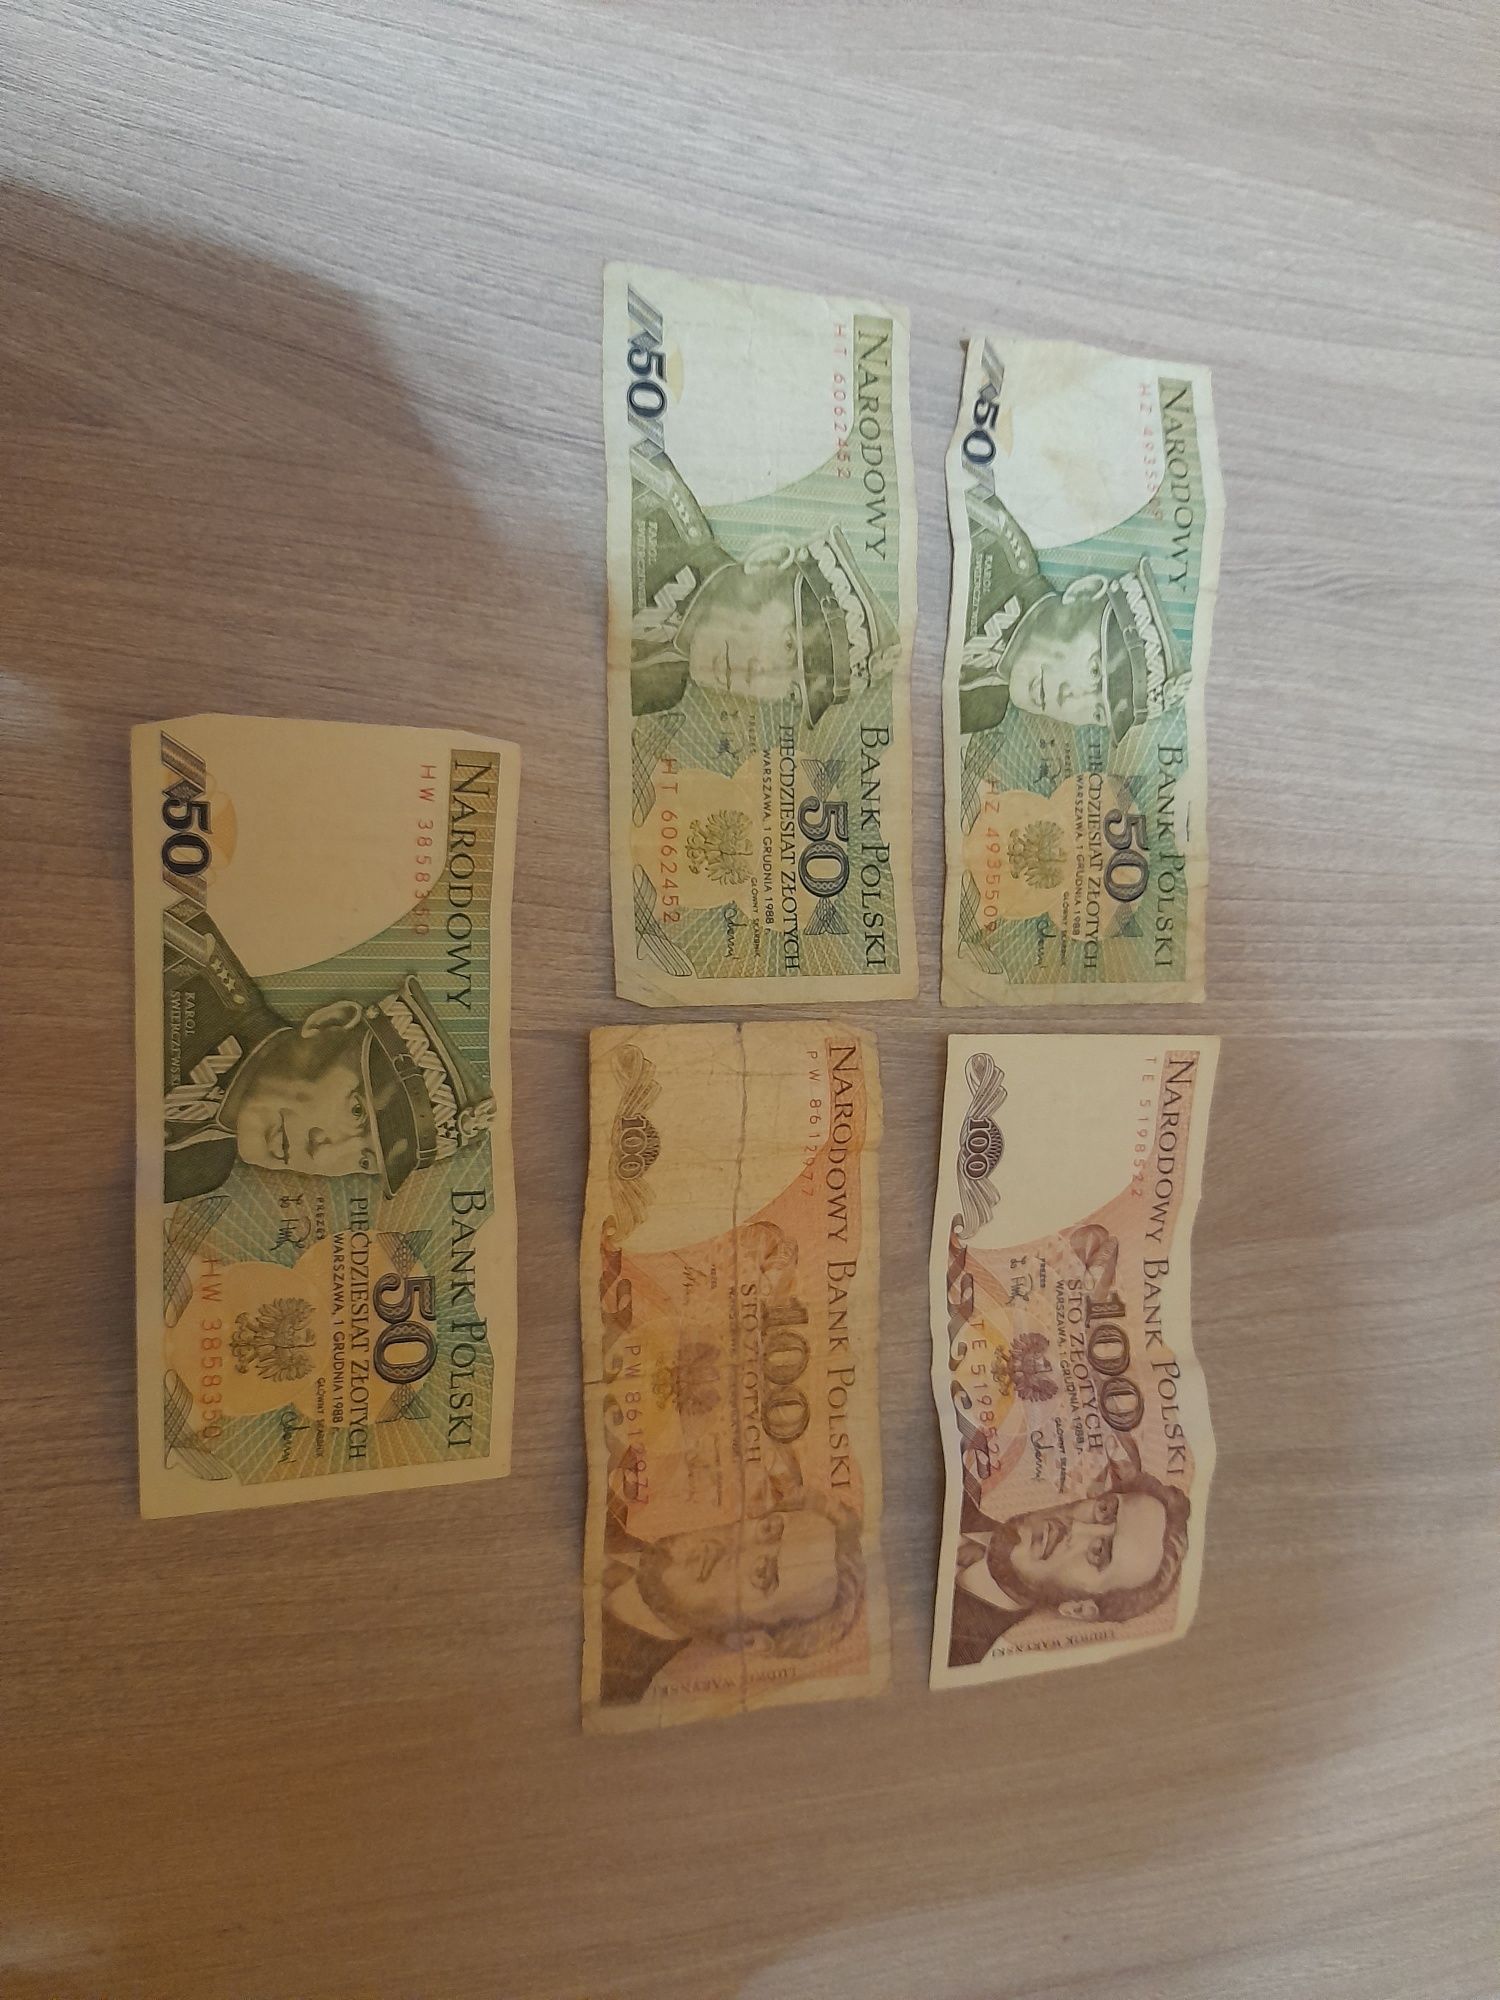 Stare banknoty z PRL